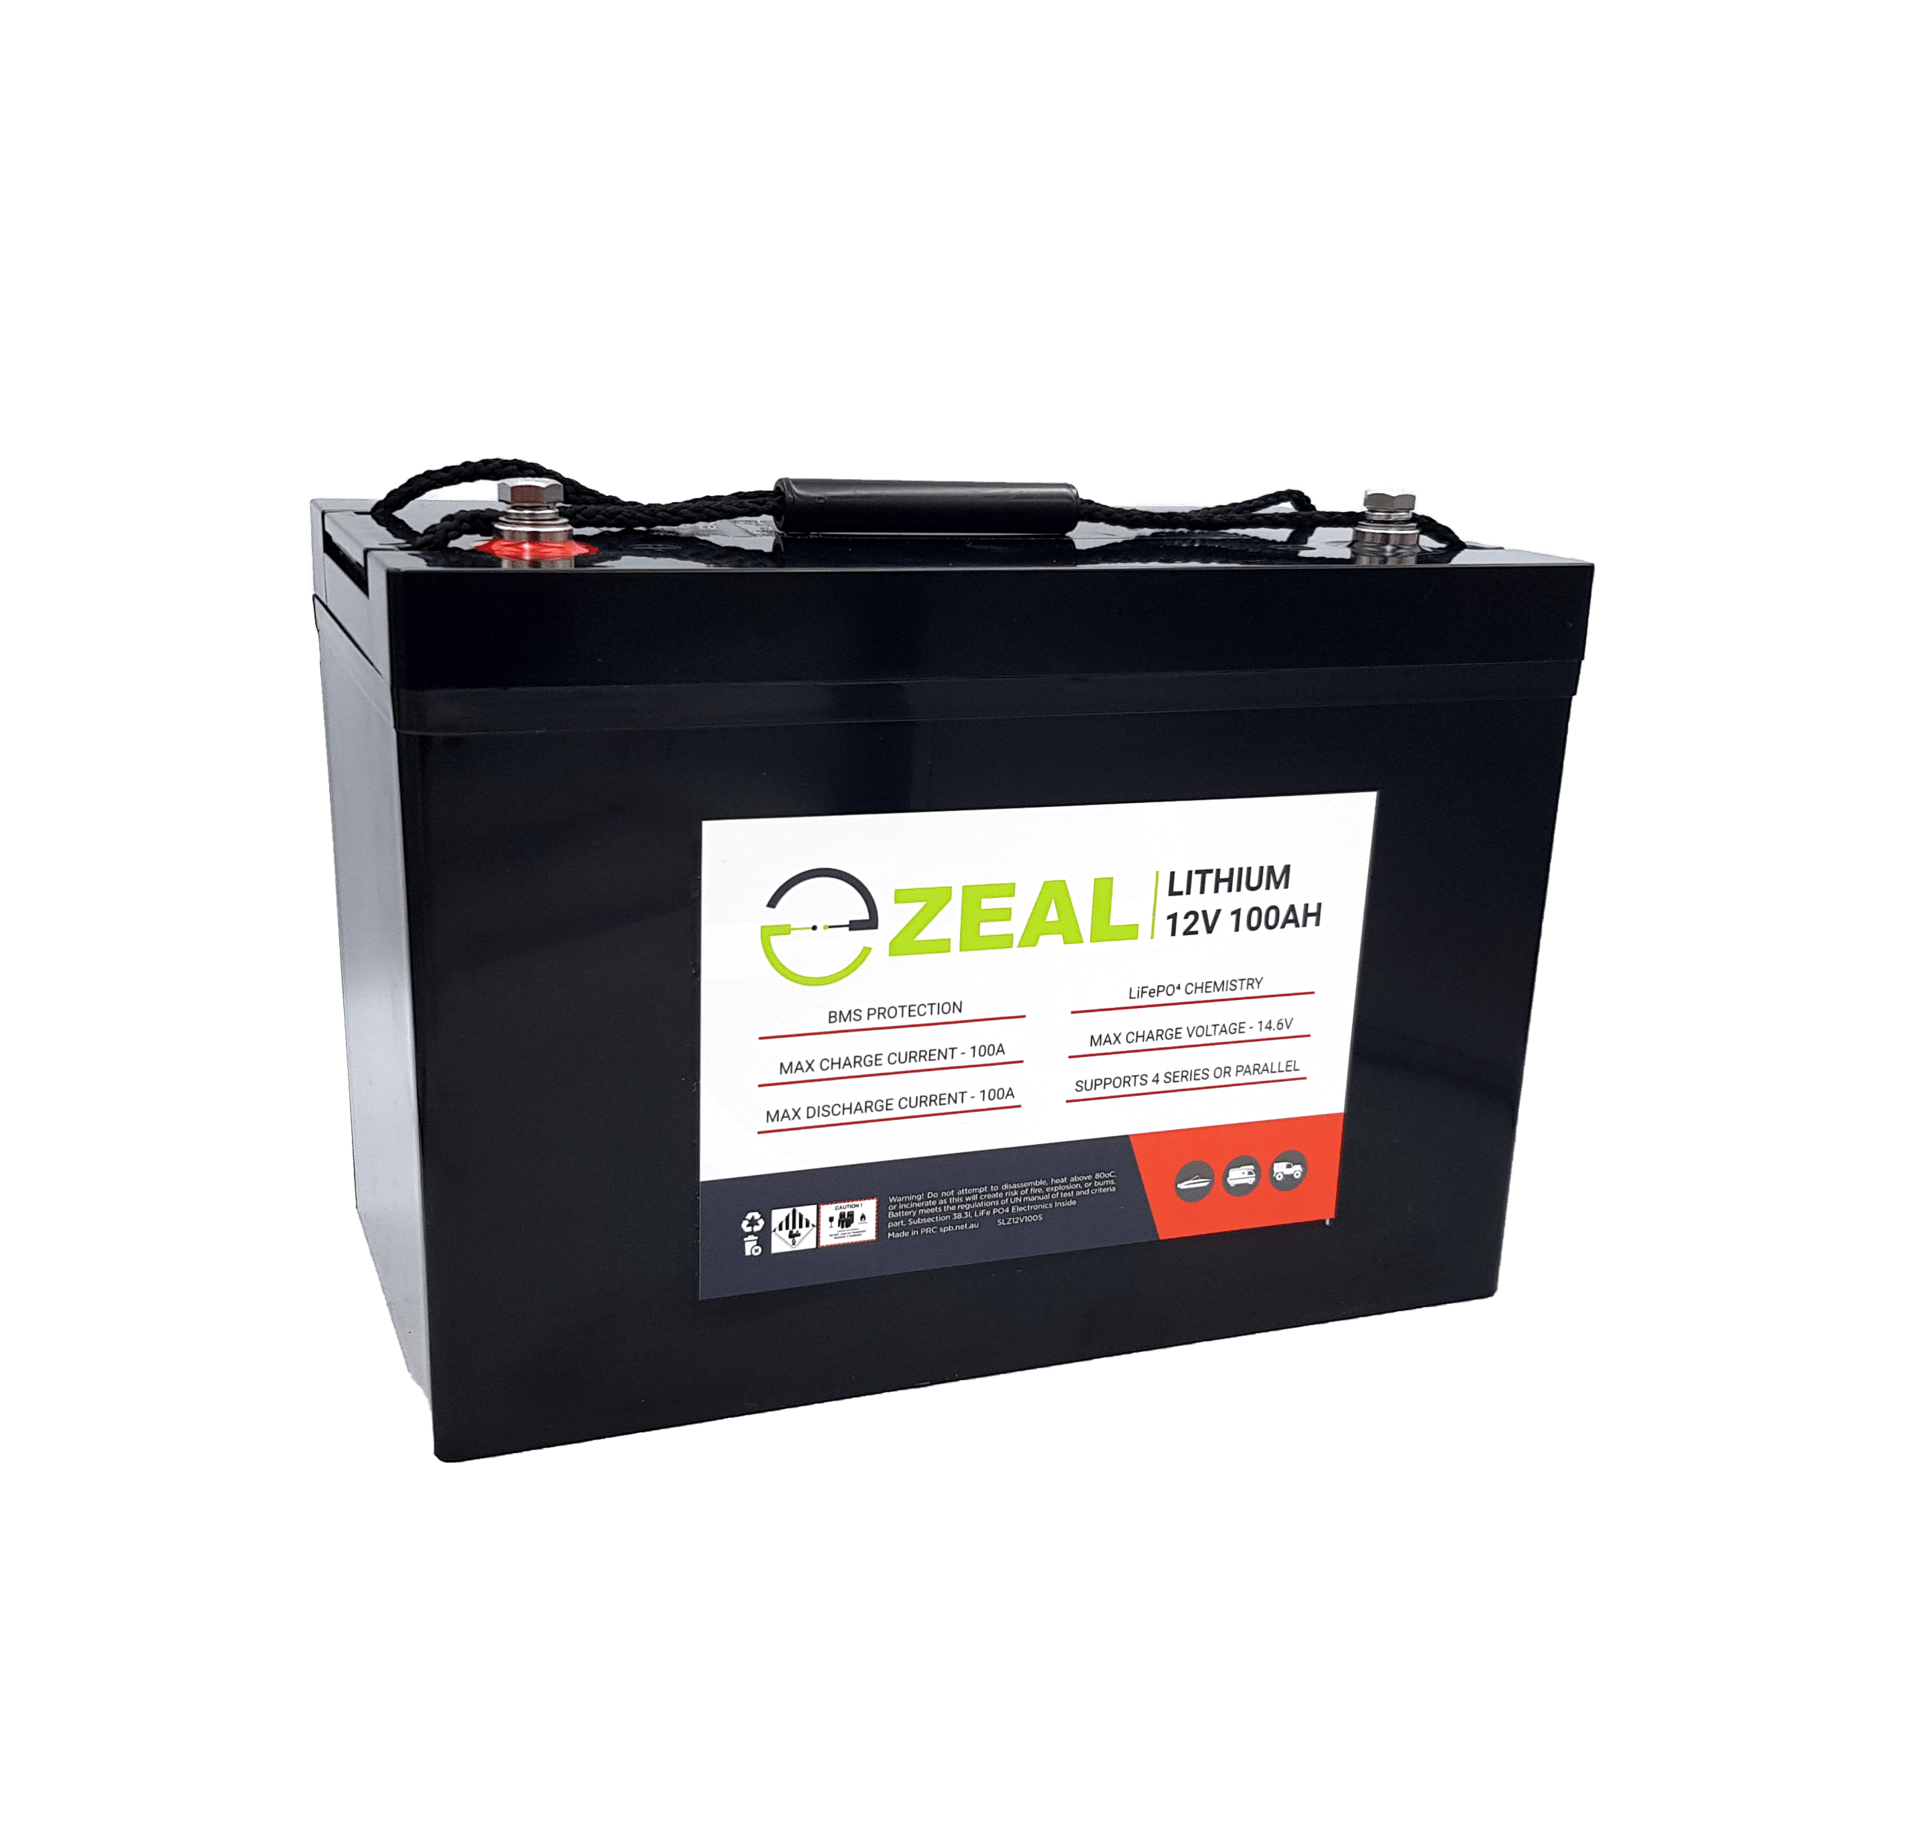 ZEAL 100AH Lithium Battery